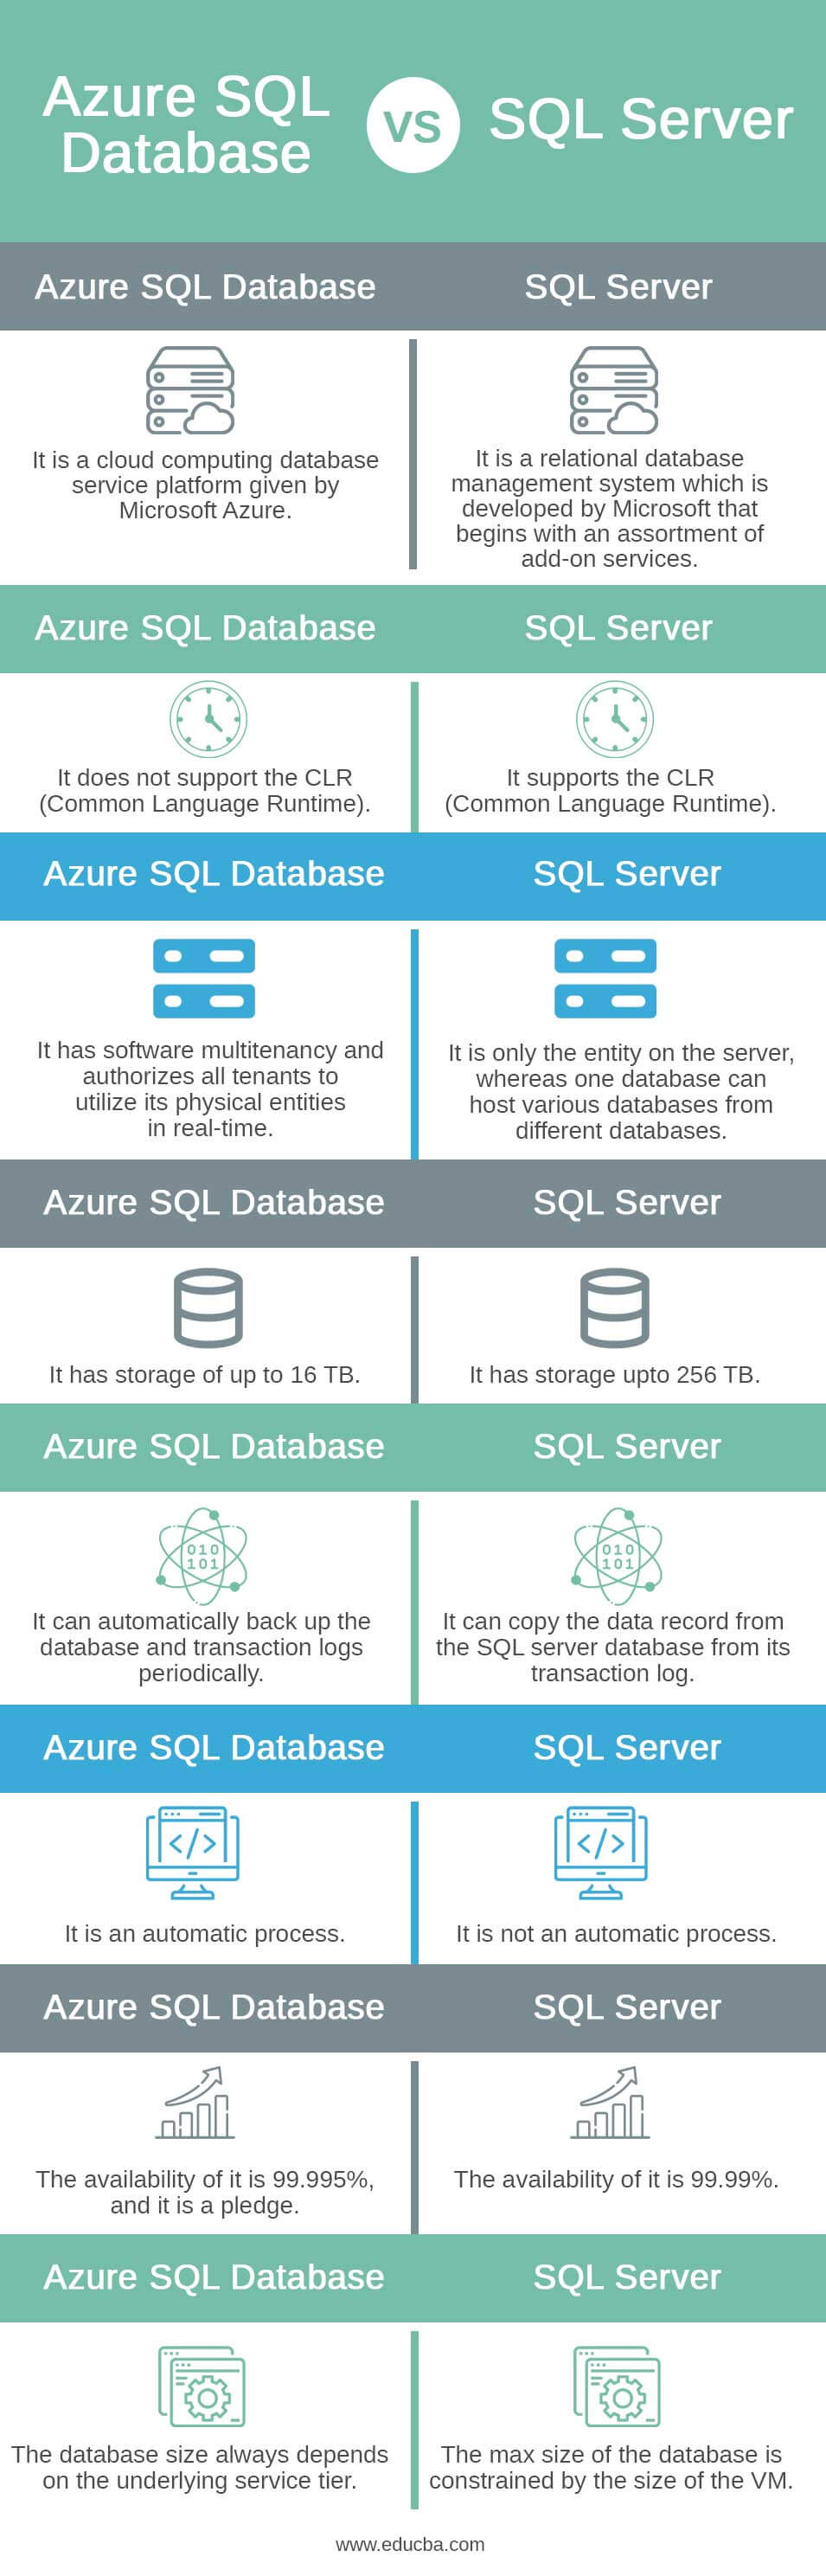 Azure-SQL-Database-vs-SQL-Server-info